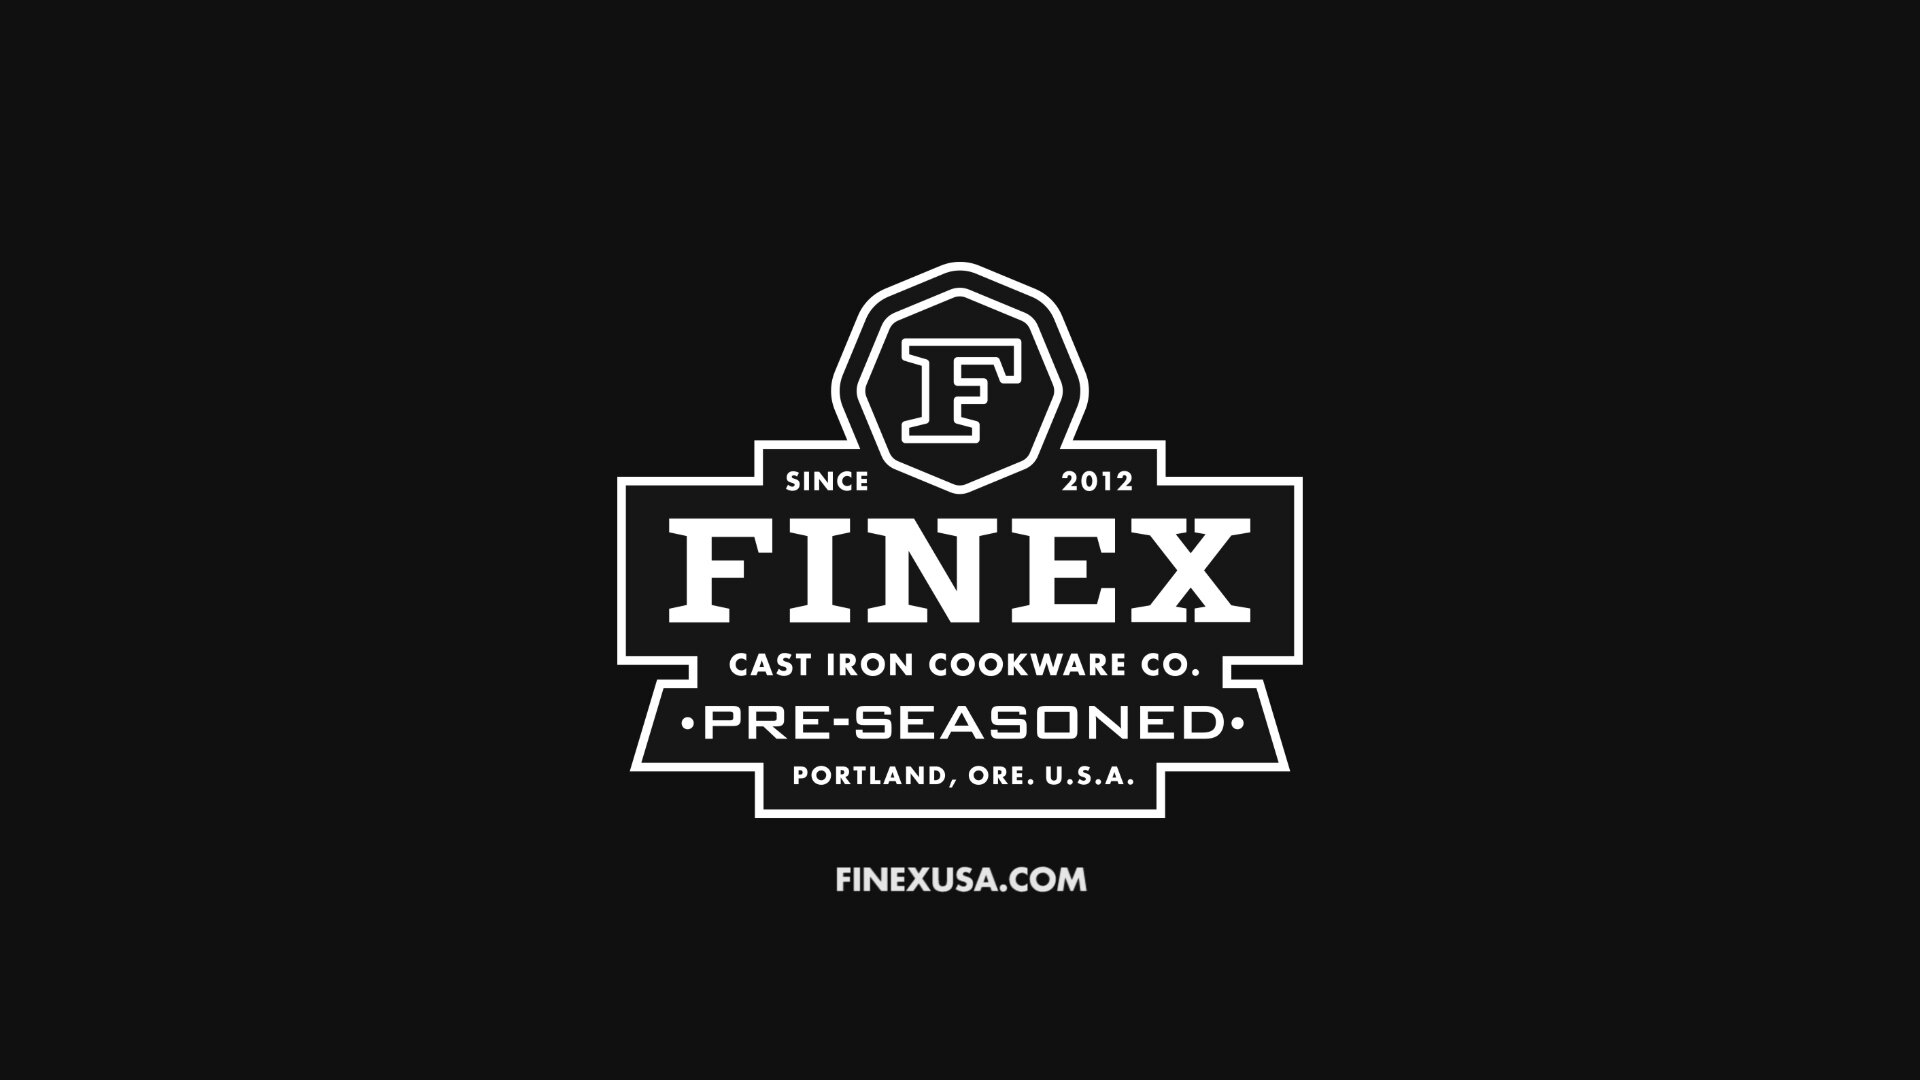 FINEX CK1-10001 3-Piece Cast Iron Care Kit